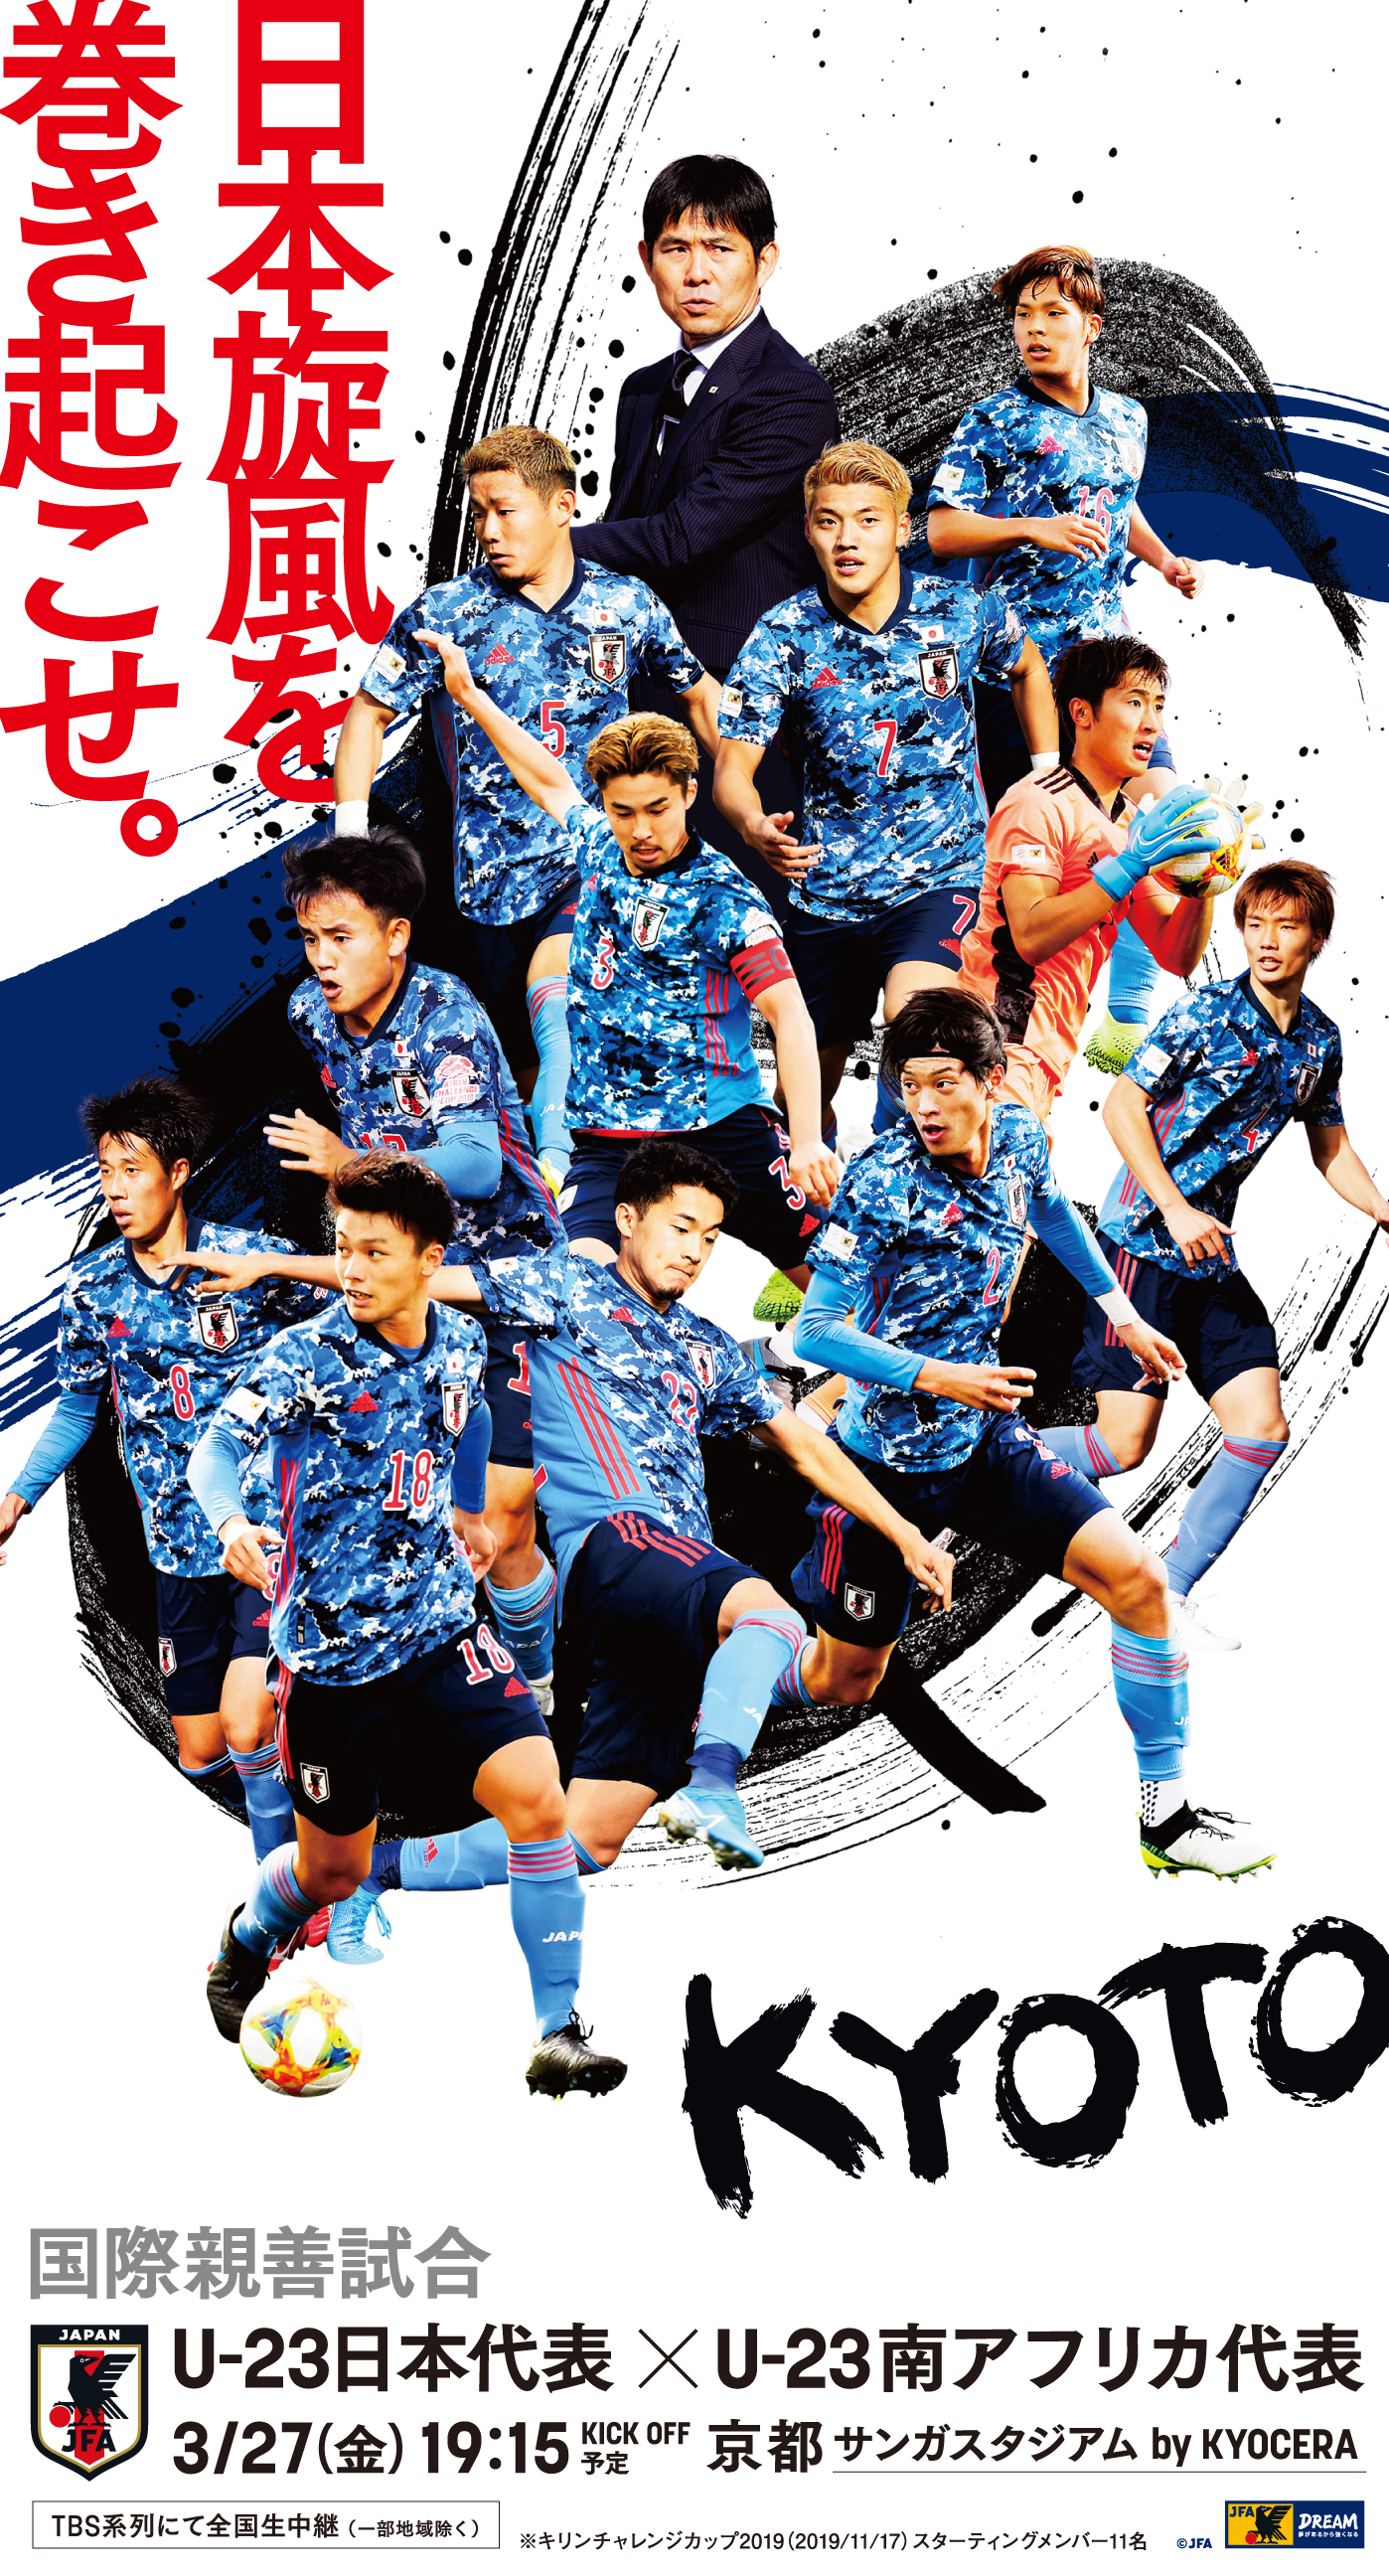 壁紙ダウンロード 国際親善試合 3 27 U 23 日本代表 Jfa 日本サッカー協会